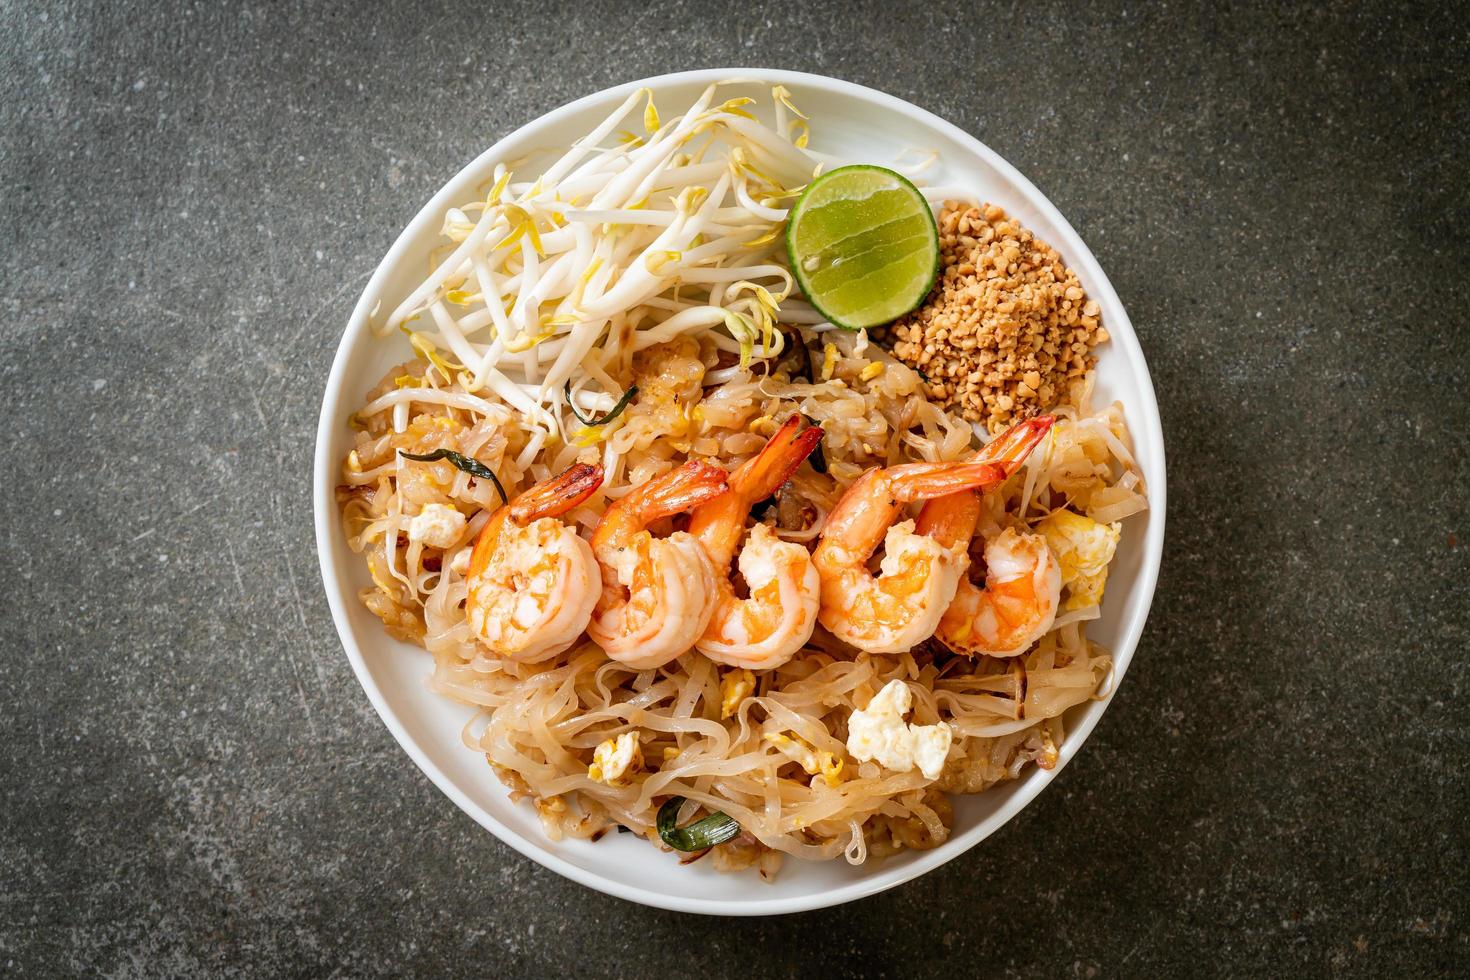 nouilles sautées aux crevettes et choux ou pad thai - style cuisine asiatique photo